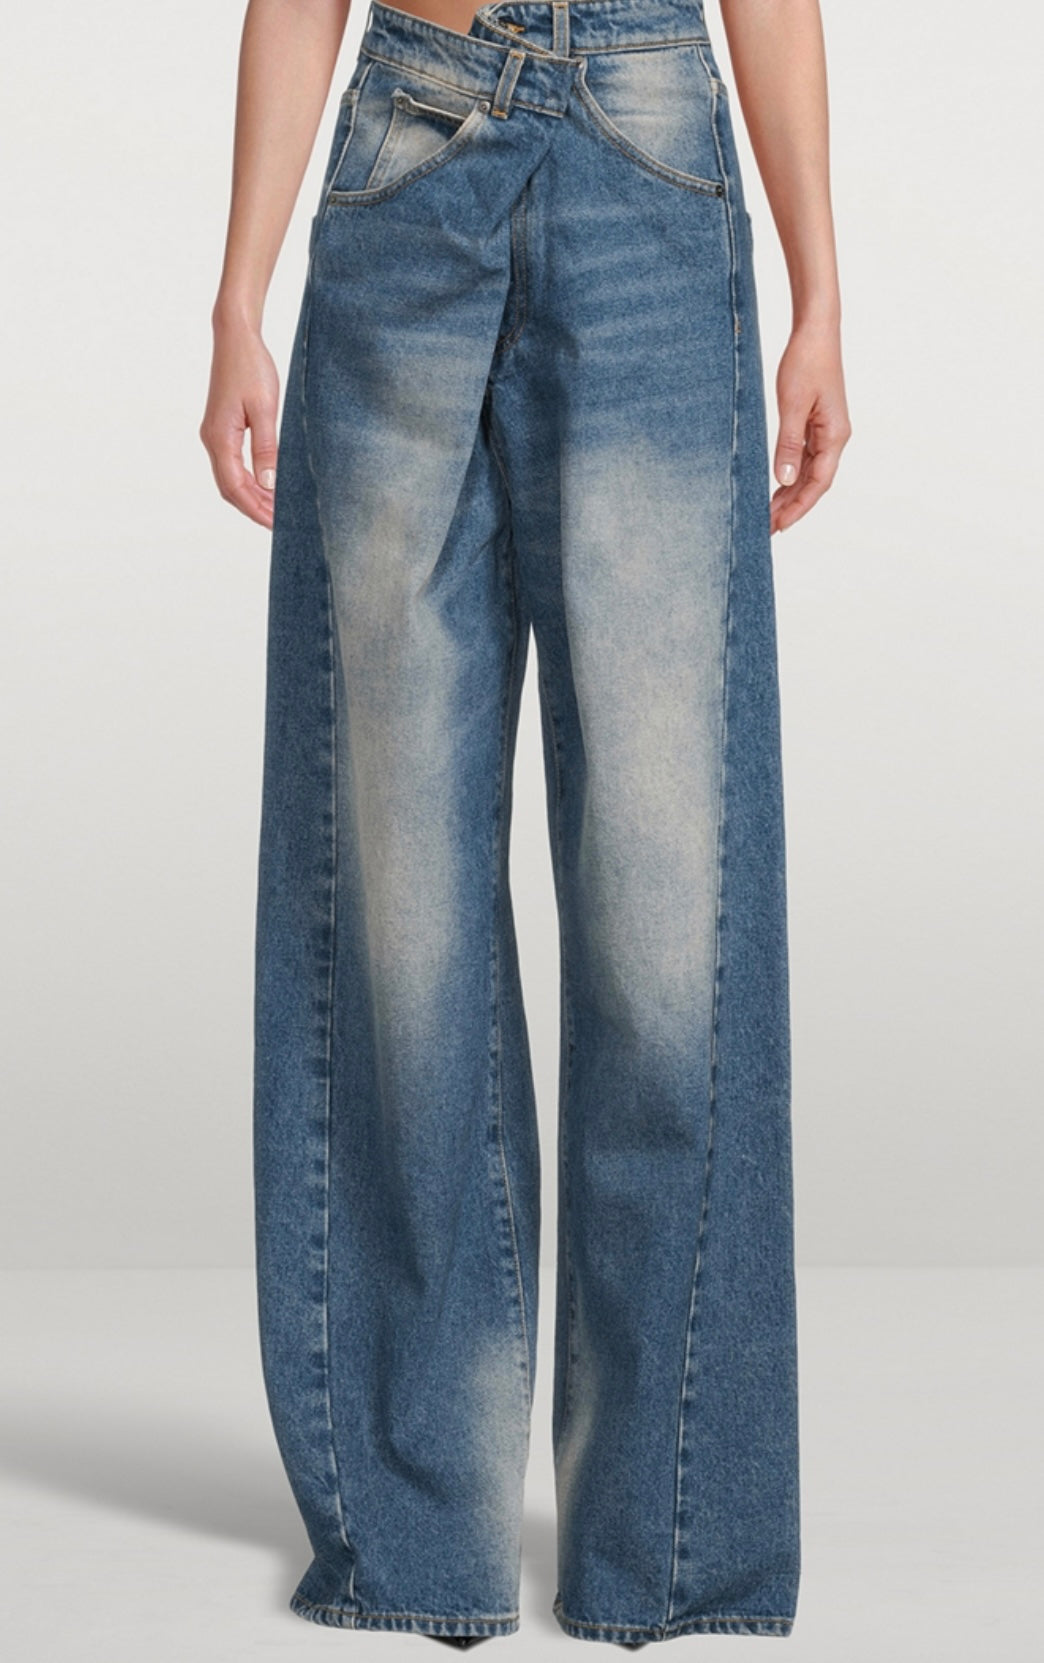 DARKPARK - 
Ines Foldover Jeans